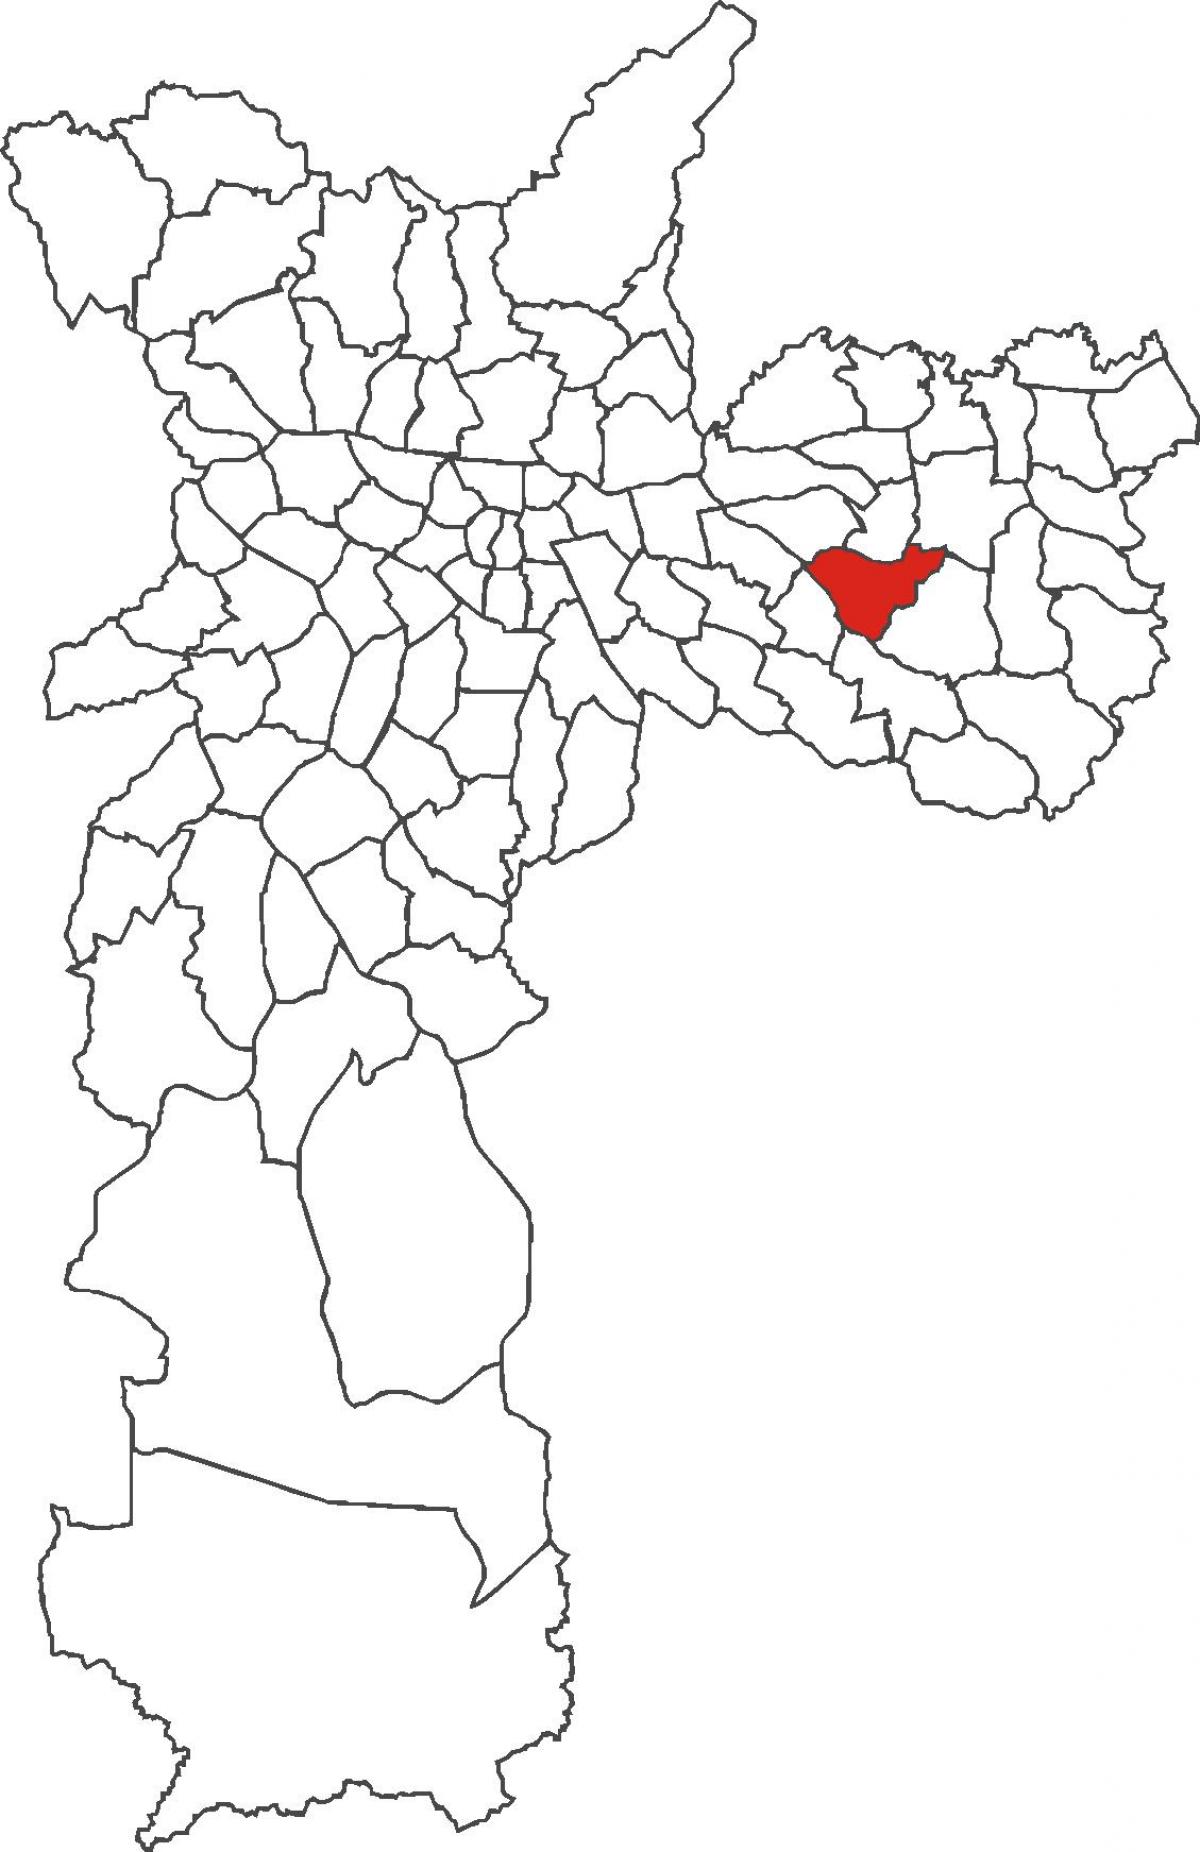 Քարտեզ քաղաքի Líder շրջան